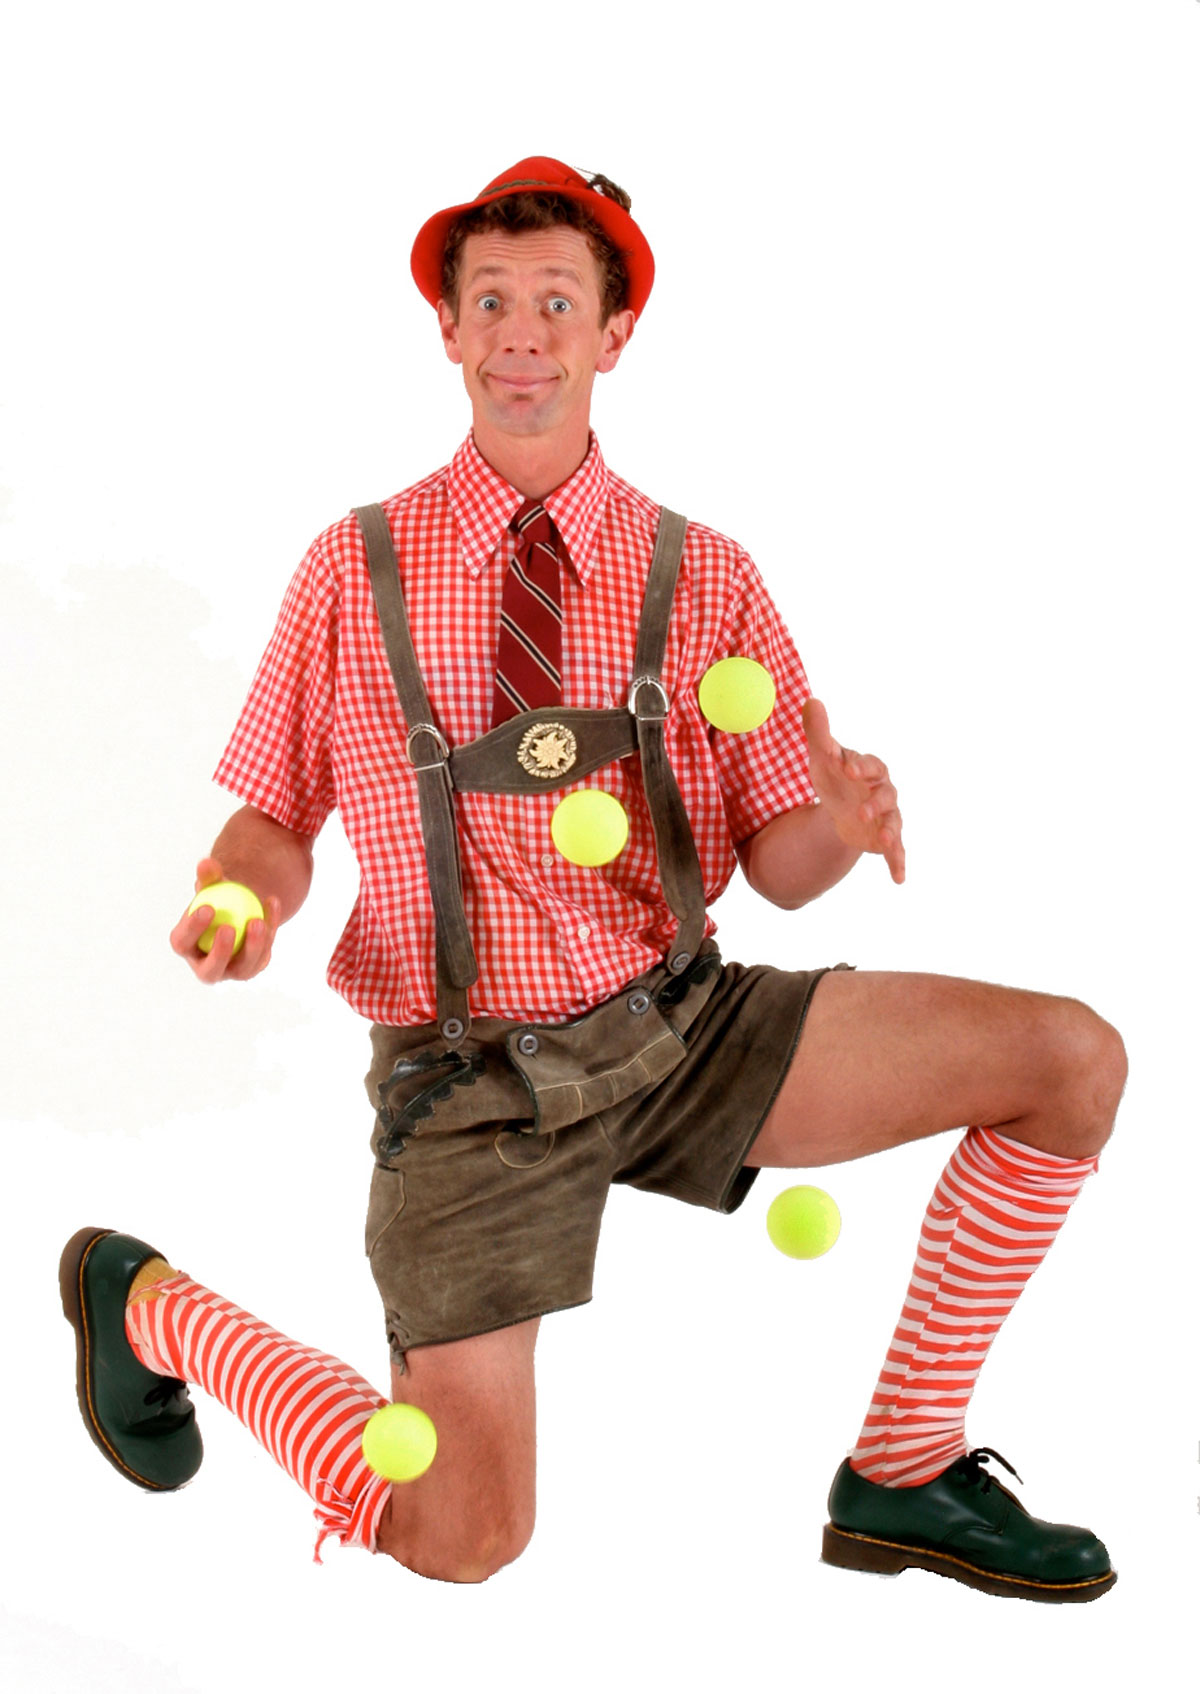 A man is juggling